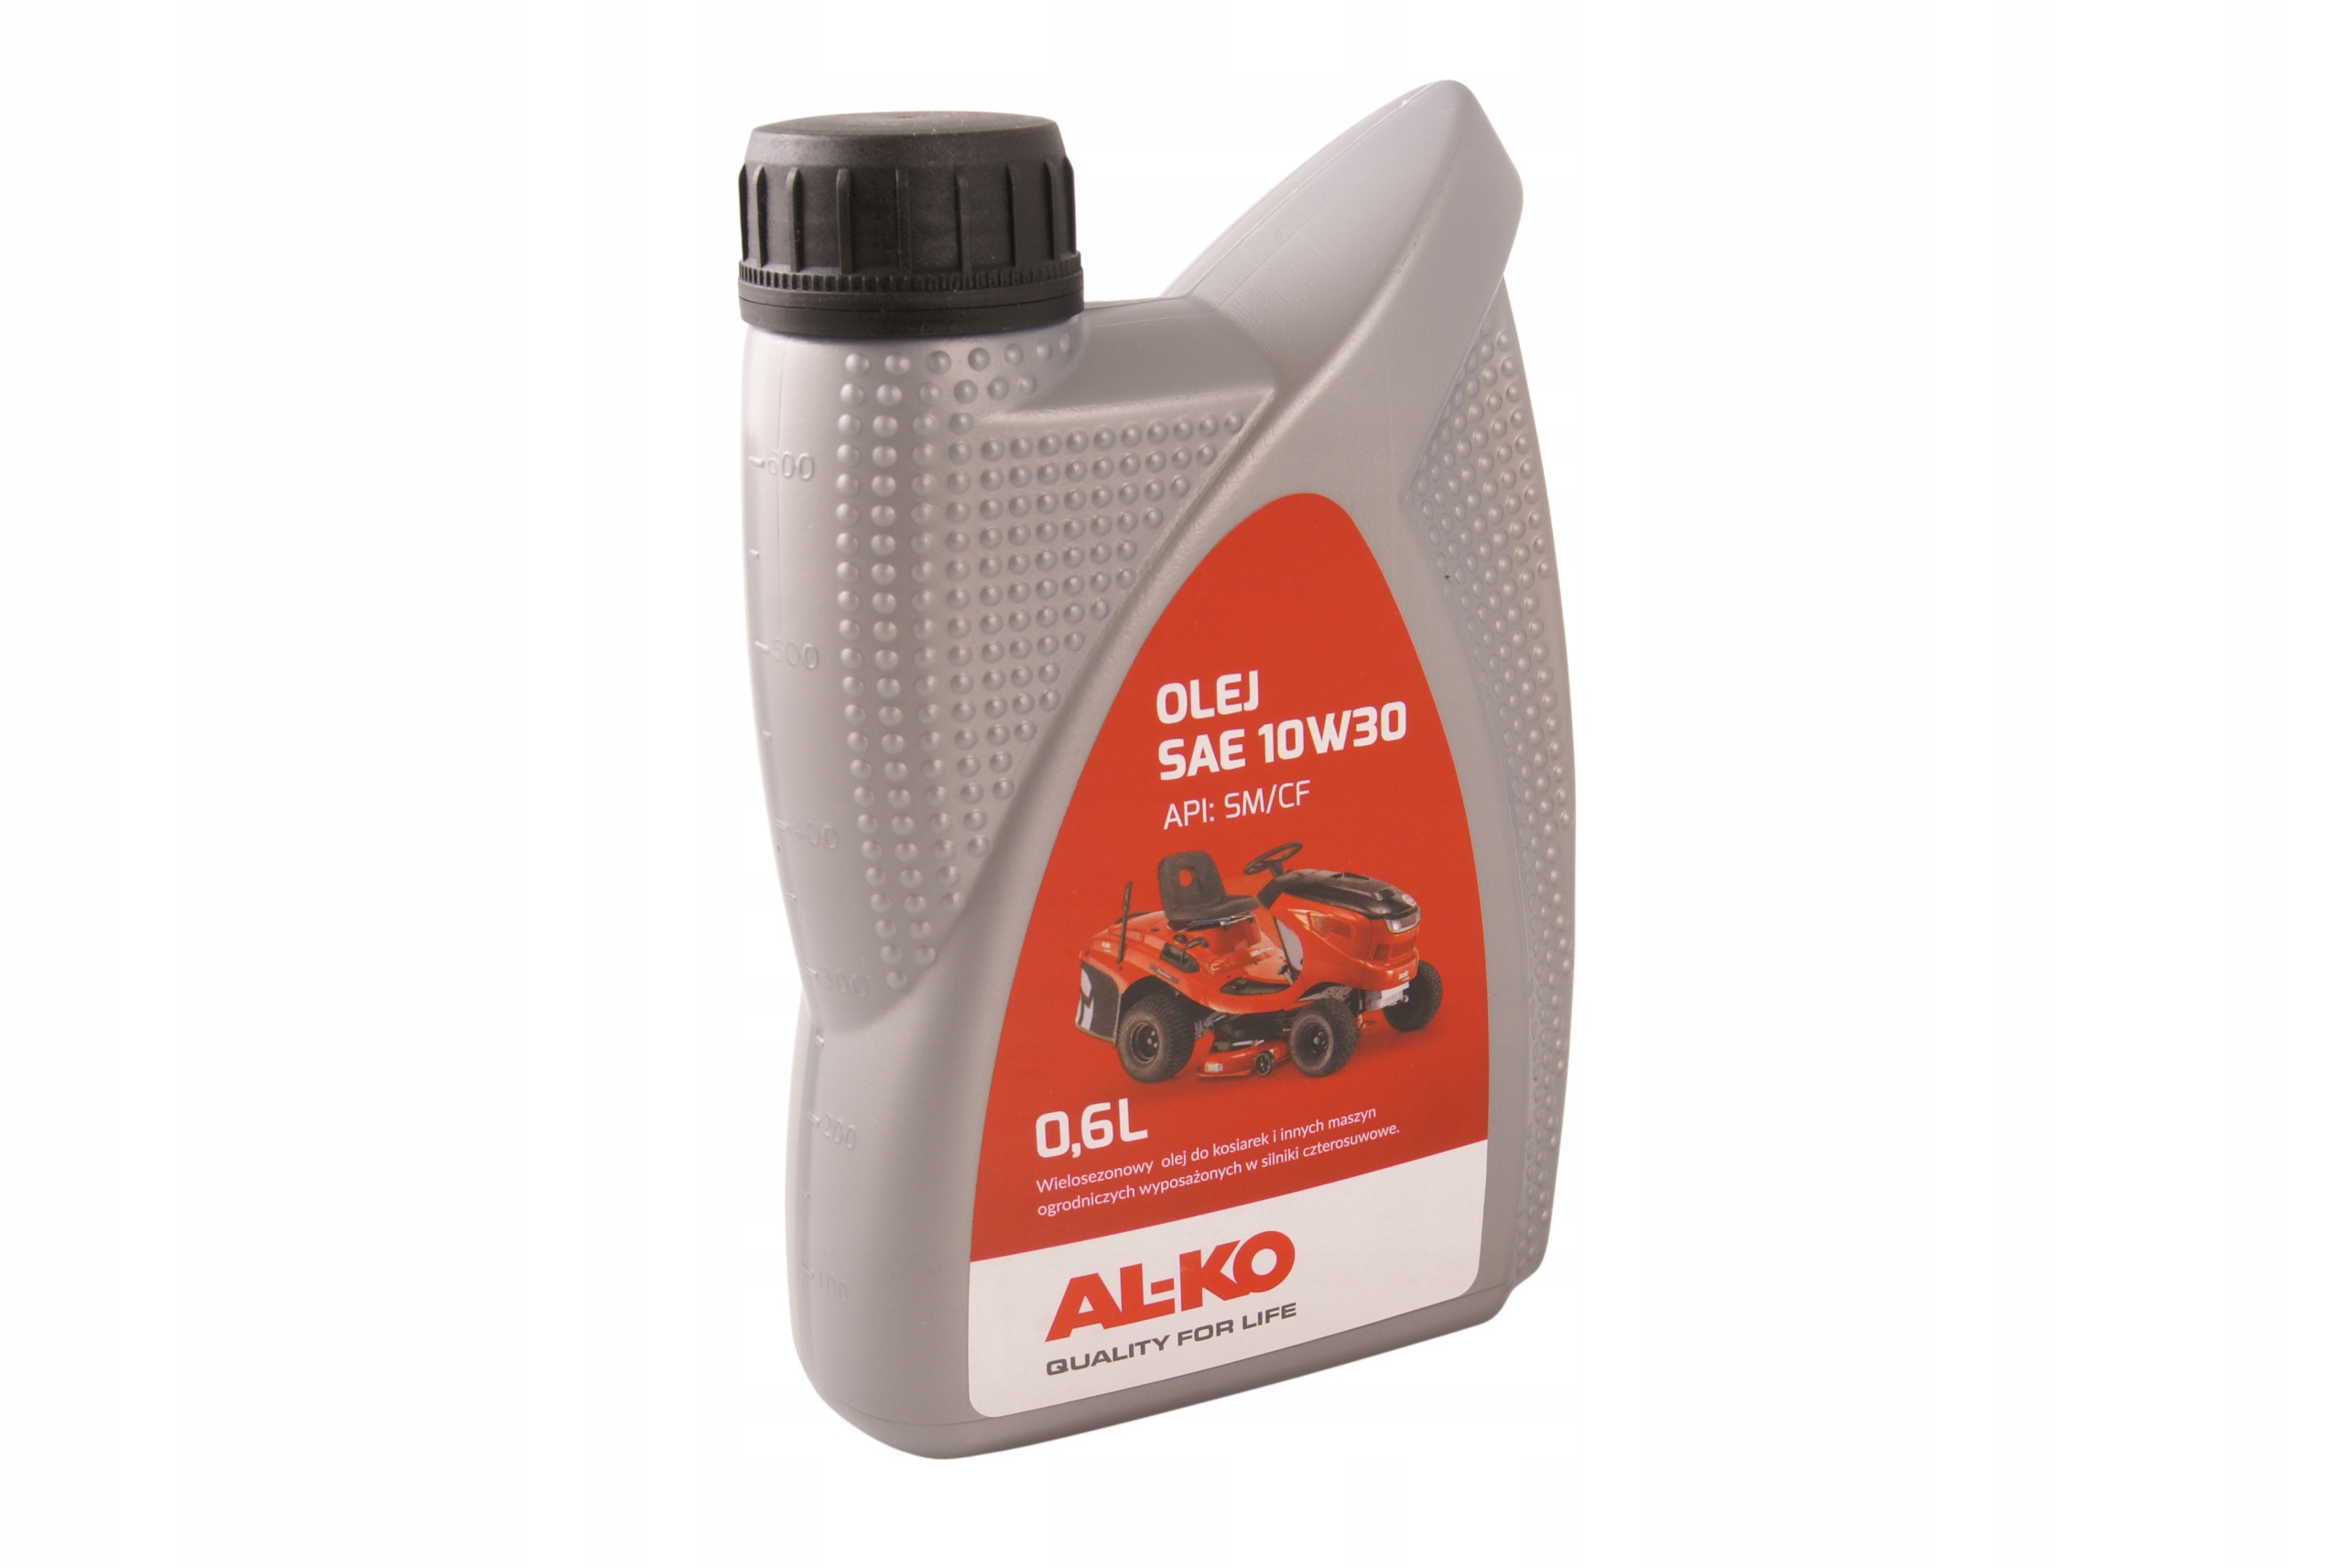 Бензиновые газонокосилки "алко": характеристики самоходных и несамоходных моделей серии al-ko highline, easy, classic, их сходства и различия, свойства, отзывы